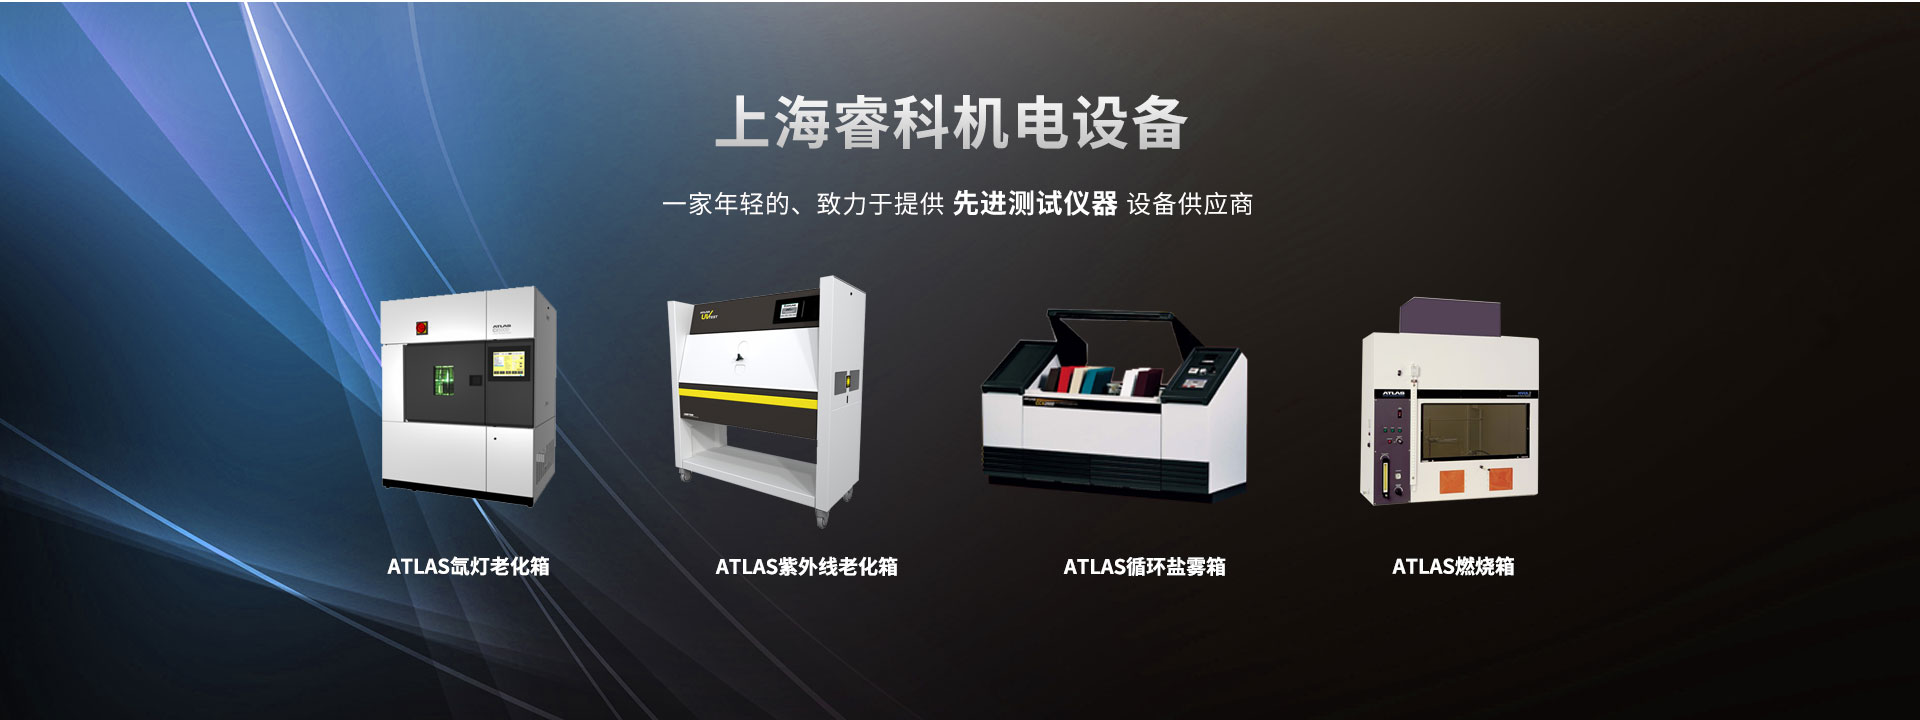 上海睿科机电设备提供美国ATLAS系列测试仪器